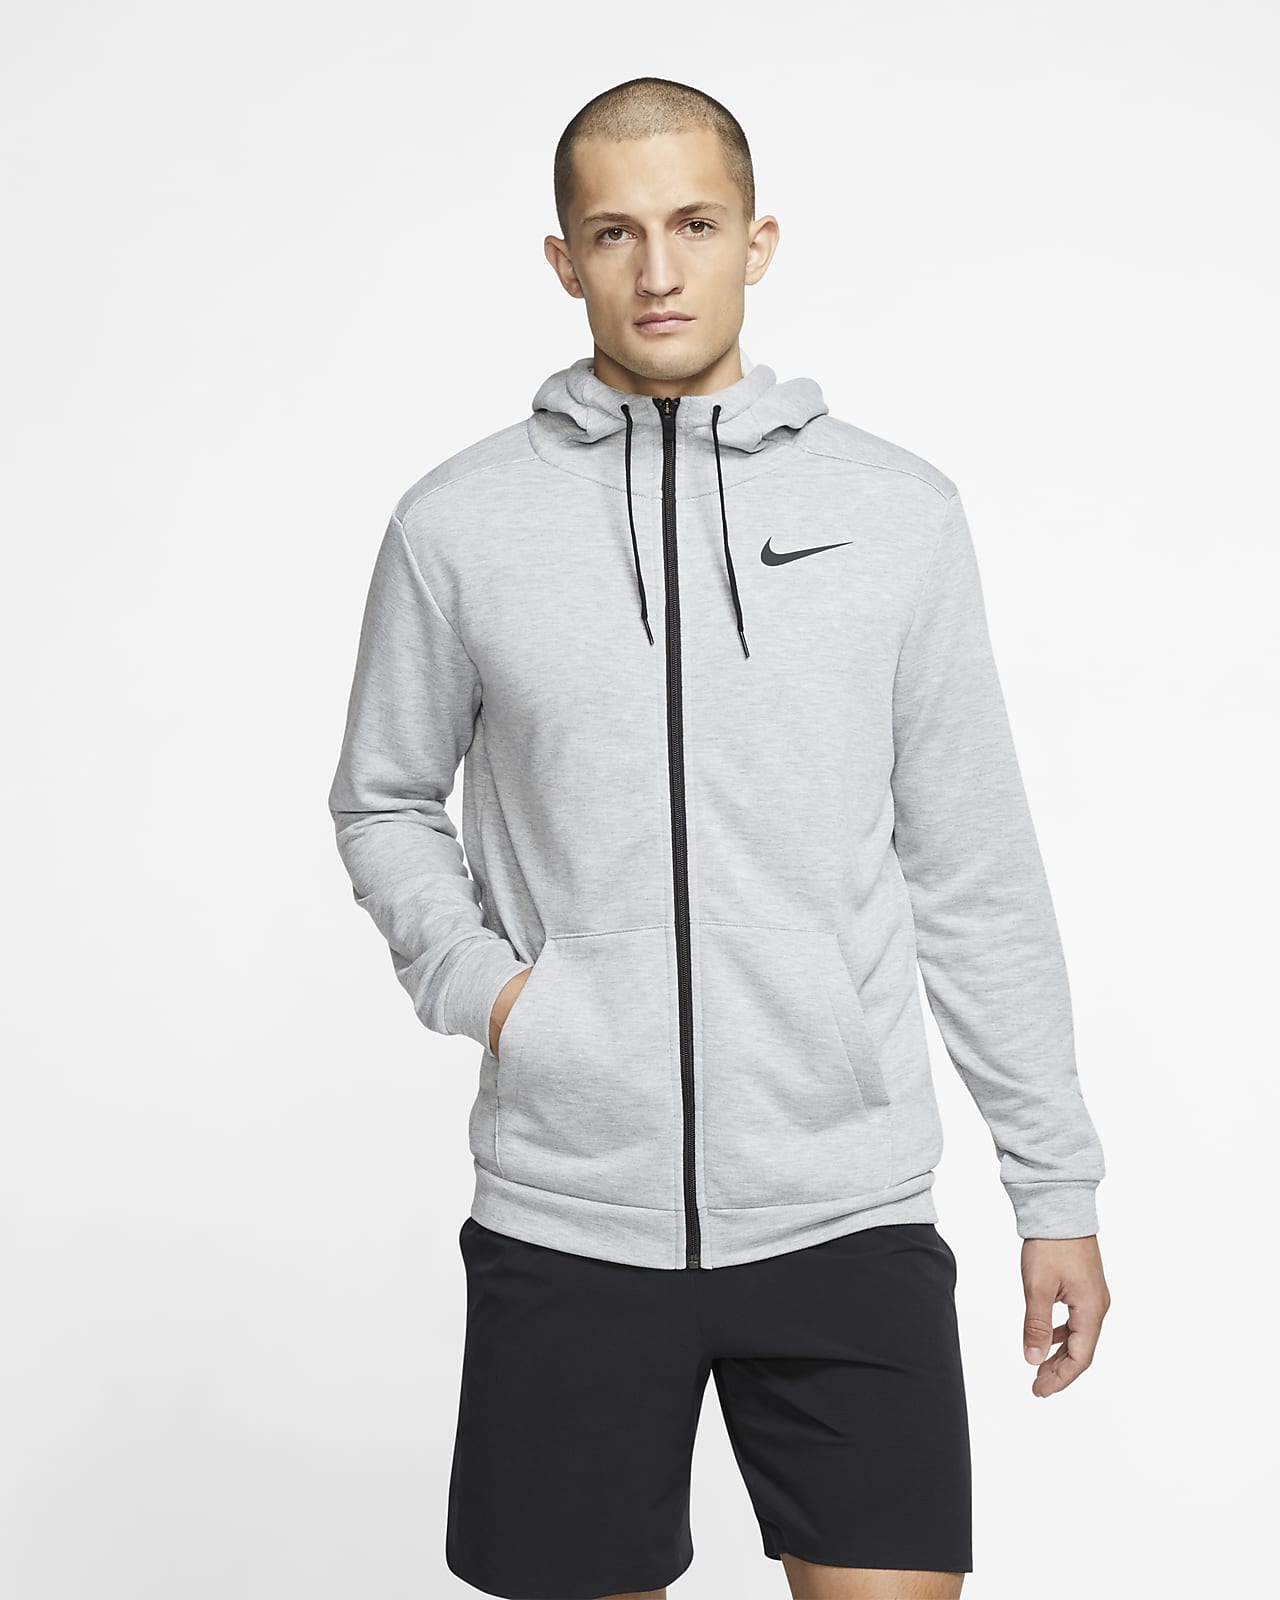 Nike Dri-FIT Sudadera con capucha de entrenamiento con cremallera completa - Hombre. ES